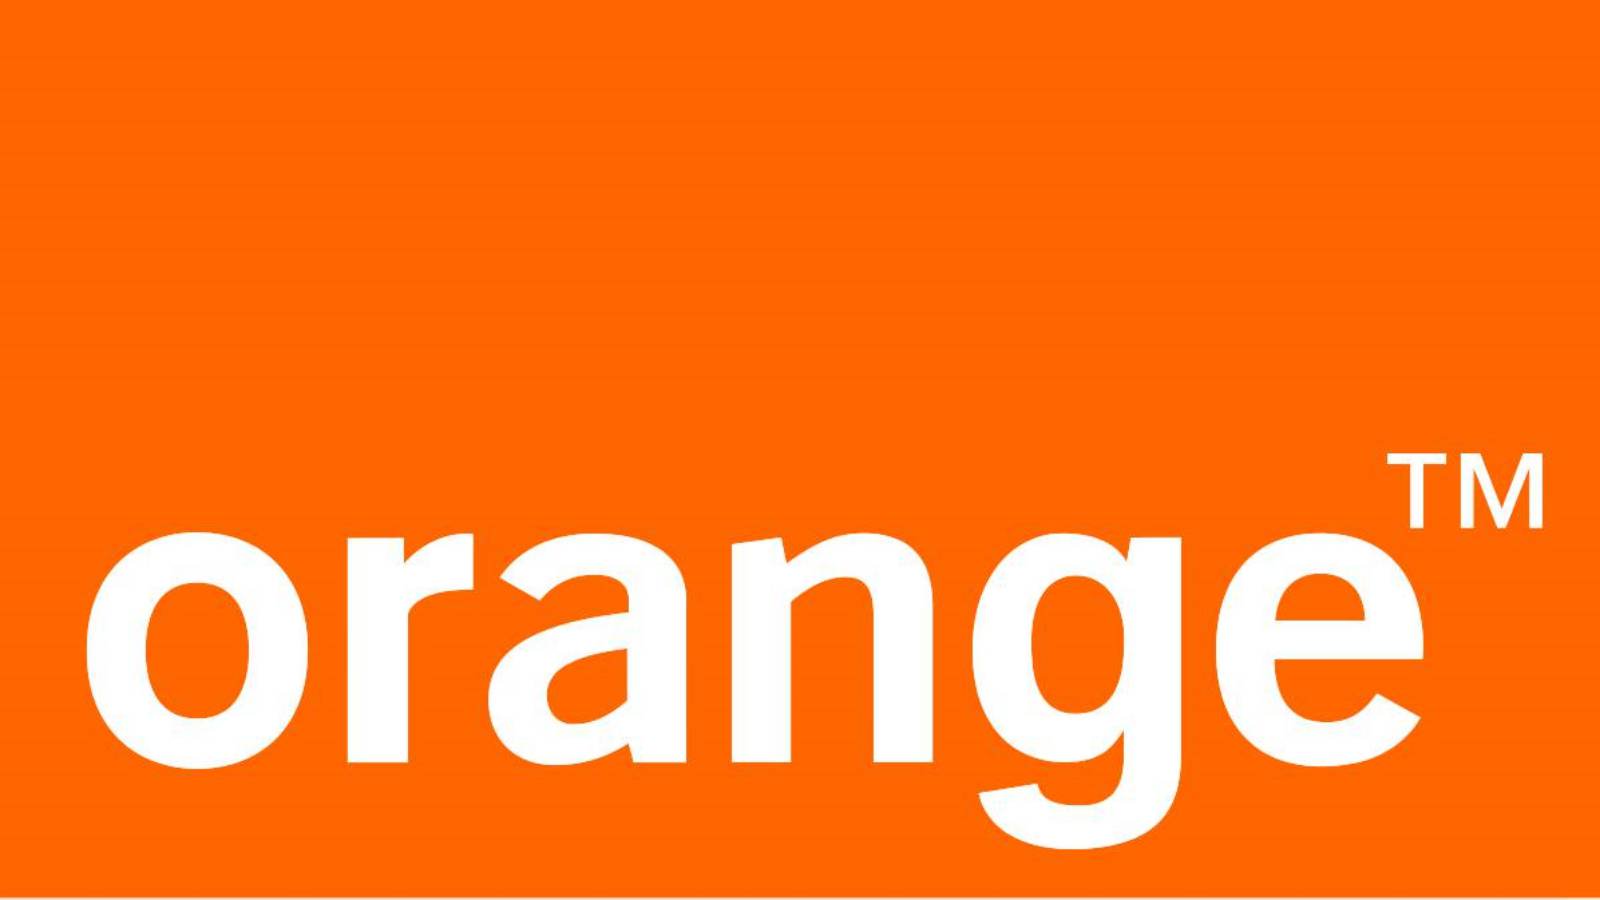 Teléfonos naranjas, precio reducido, 1 de mayo.